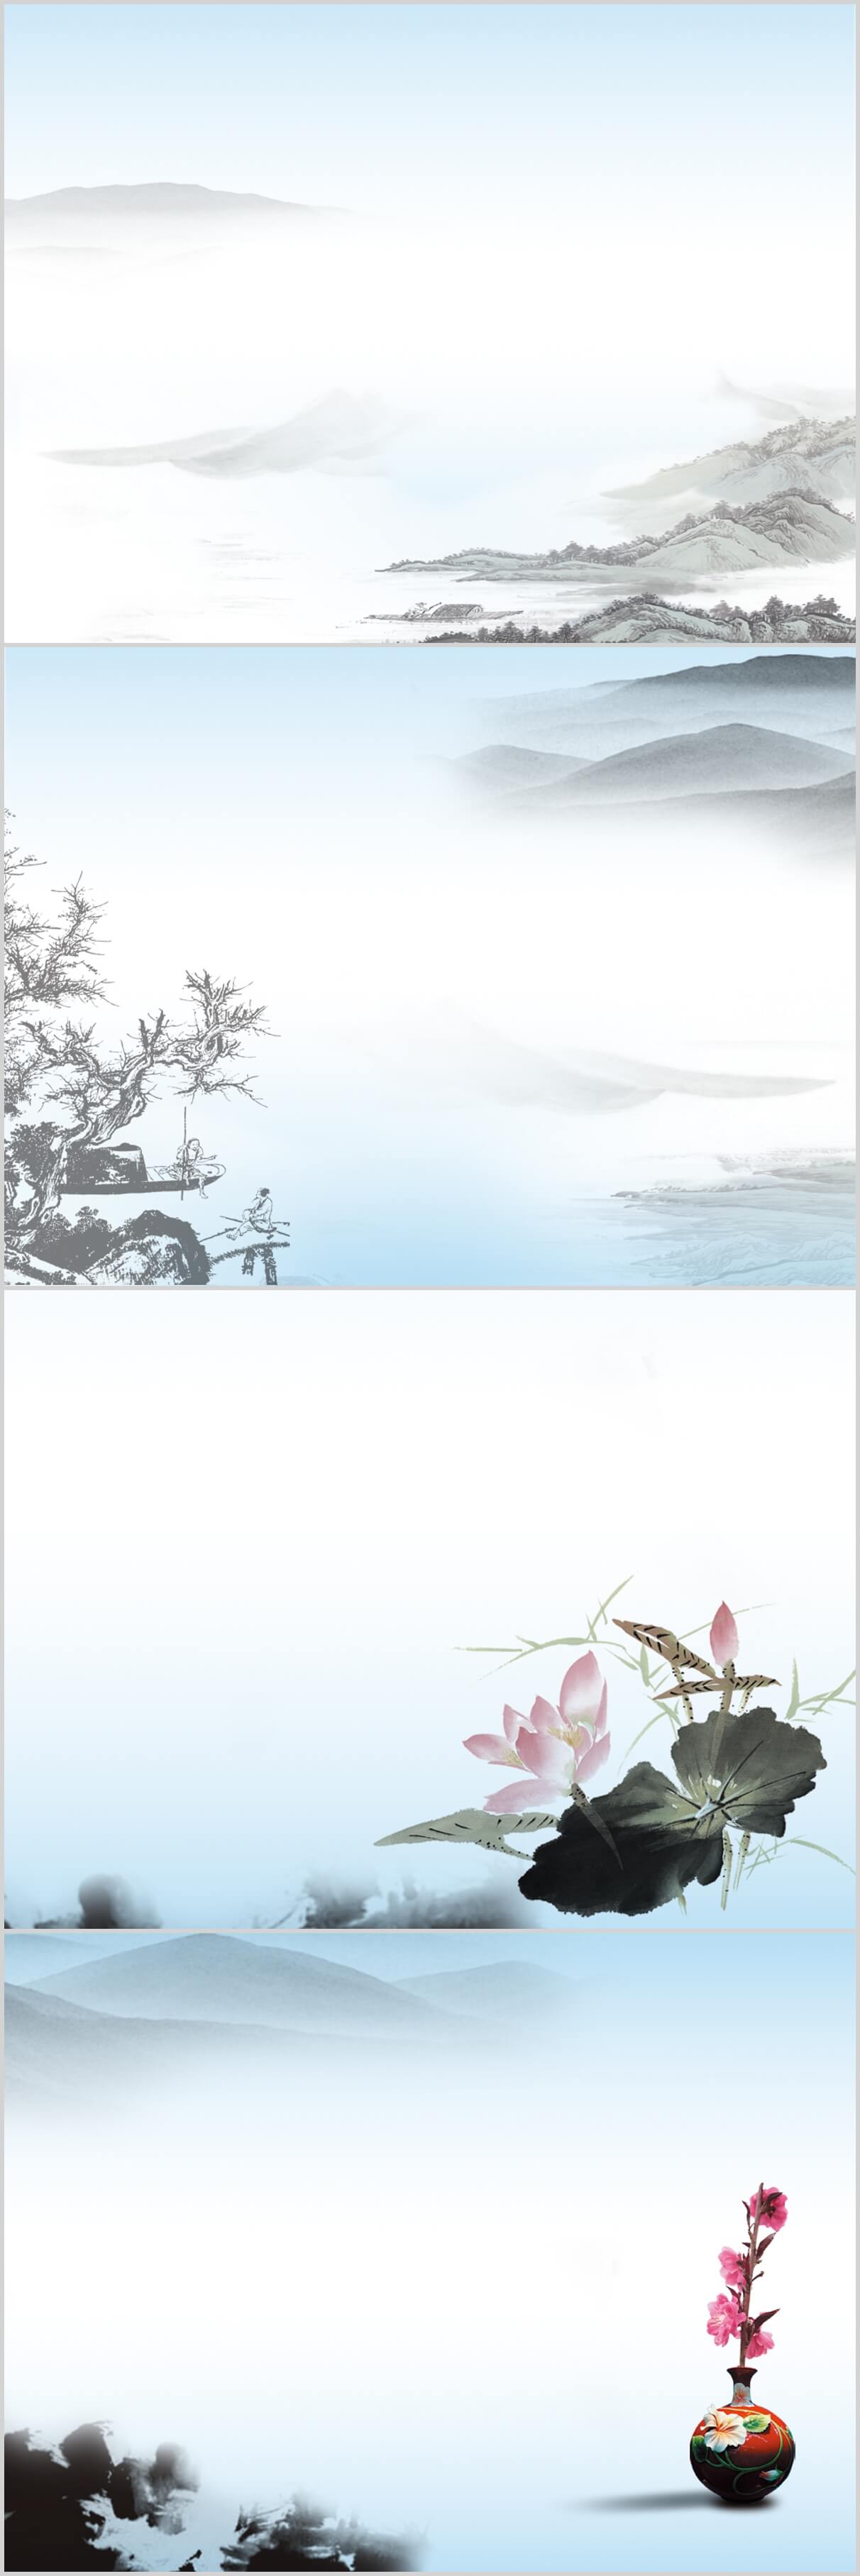 中国古典水墨山水风物典雅视觉幻灯片背景图片素材